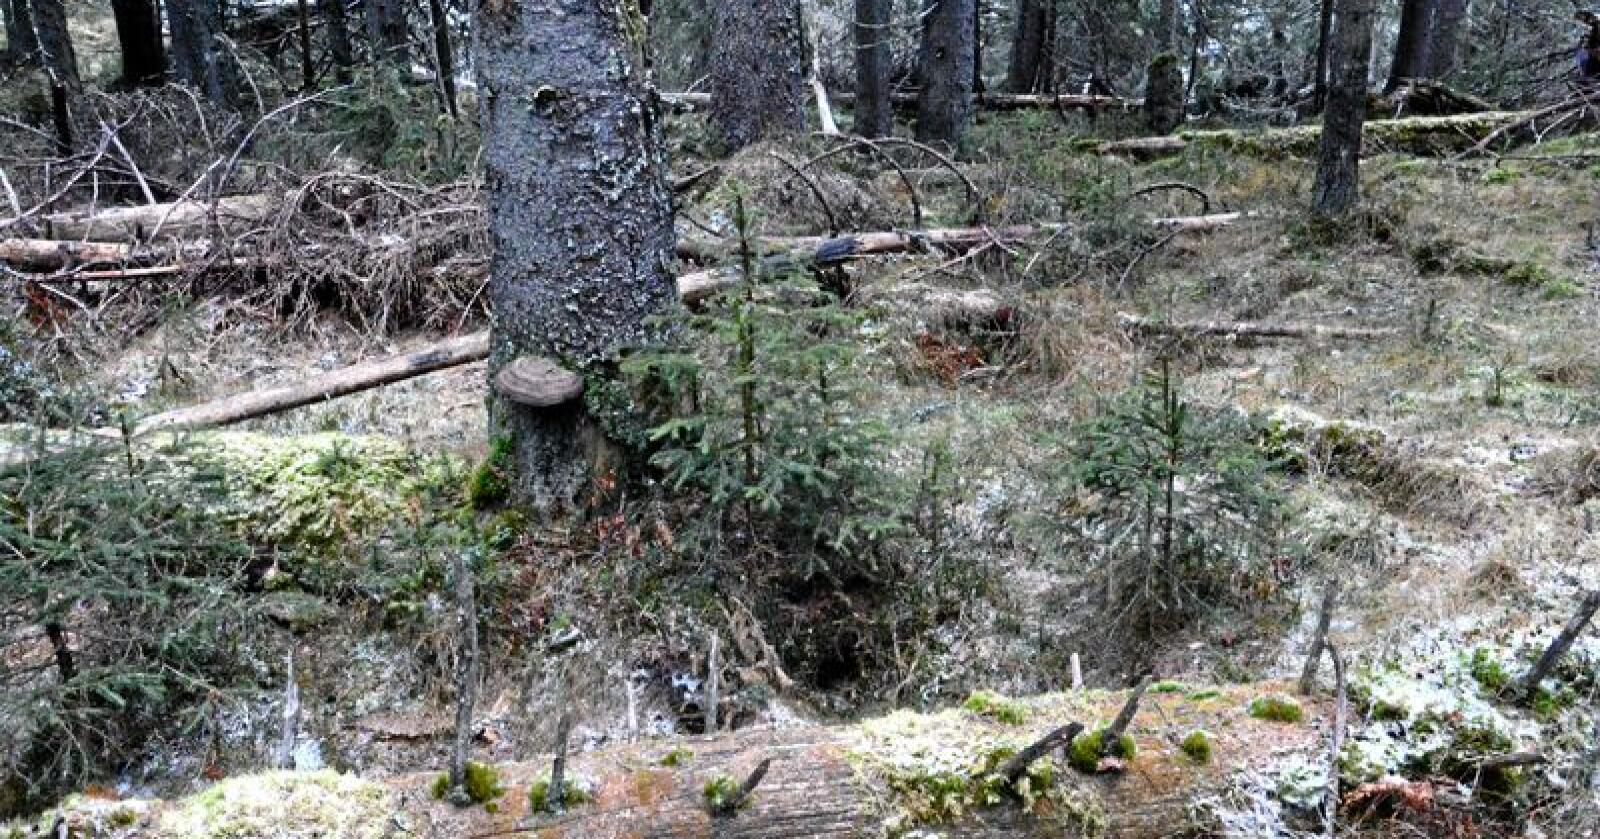 Gammel skog bugner av viktige og verneverdige arter, skriver Nationens spaltist. Foto: Ragna Kronstad